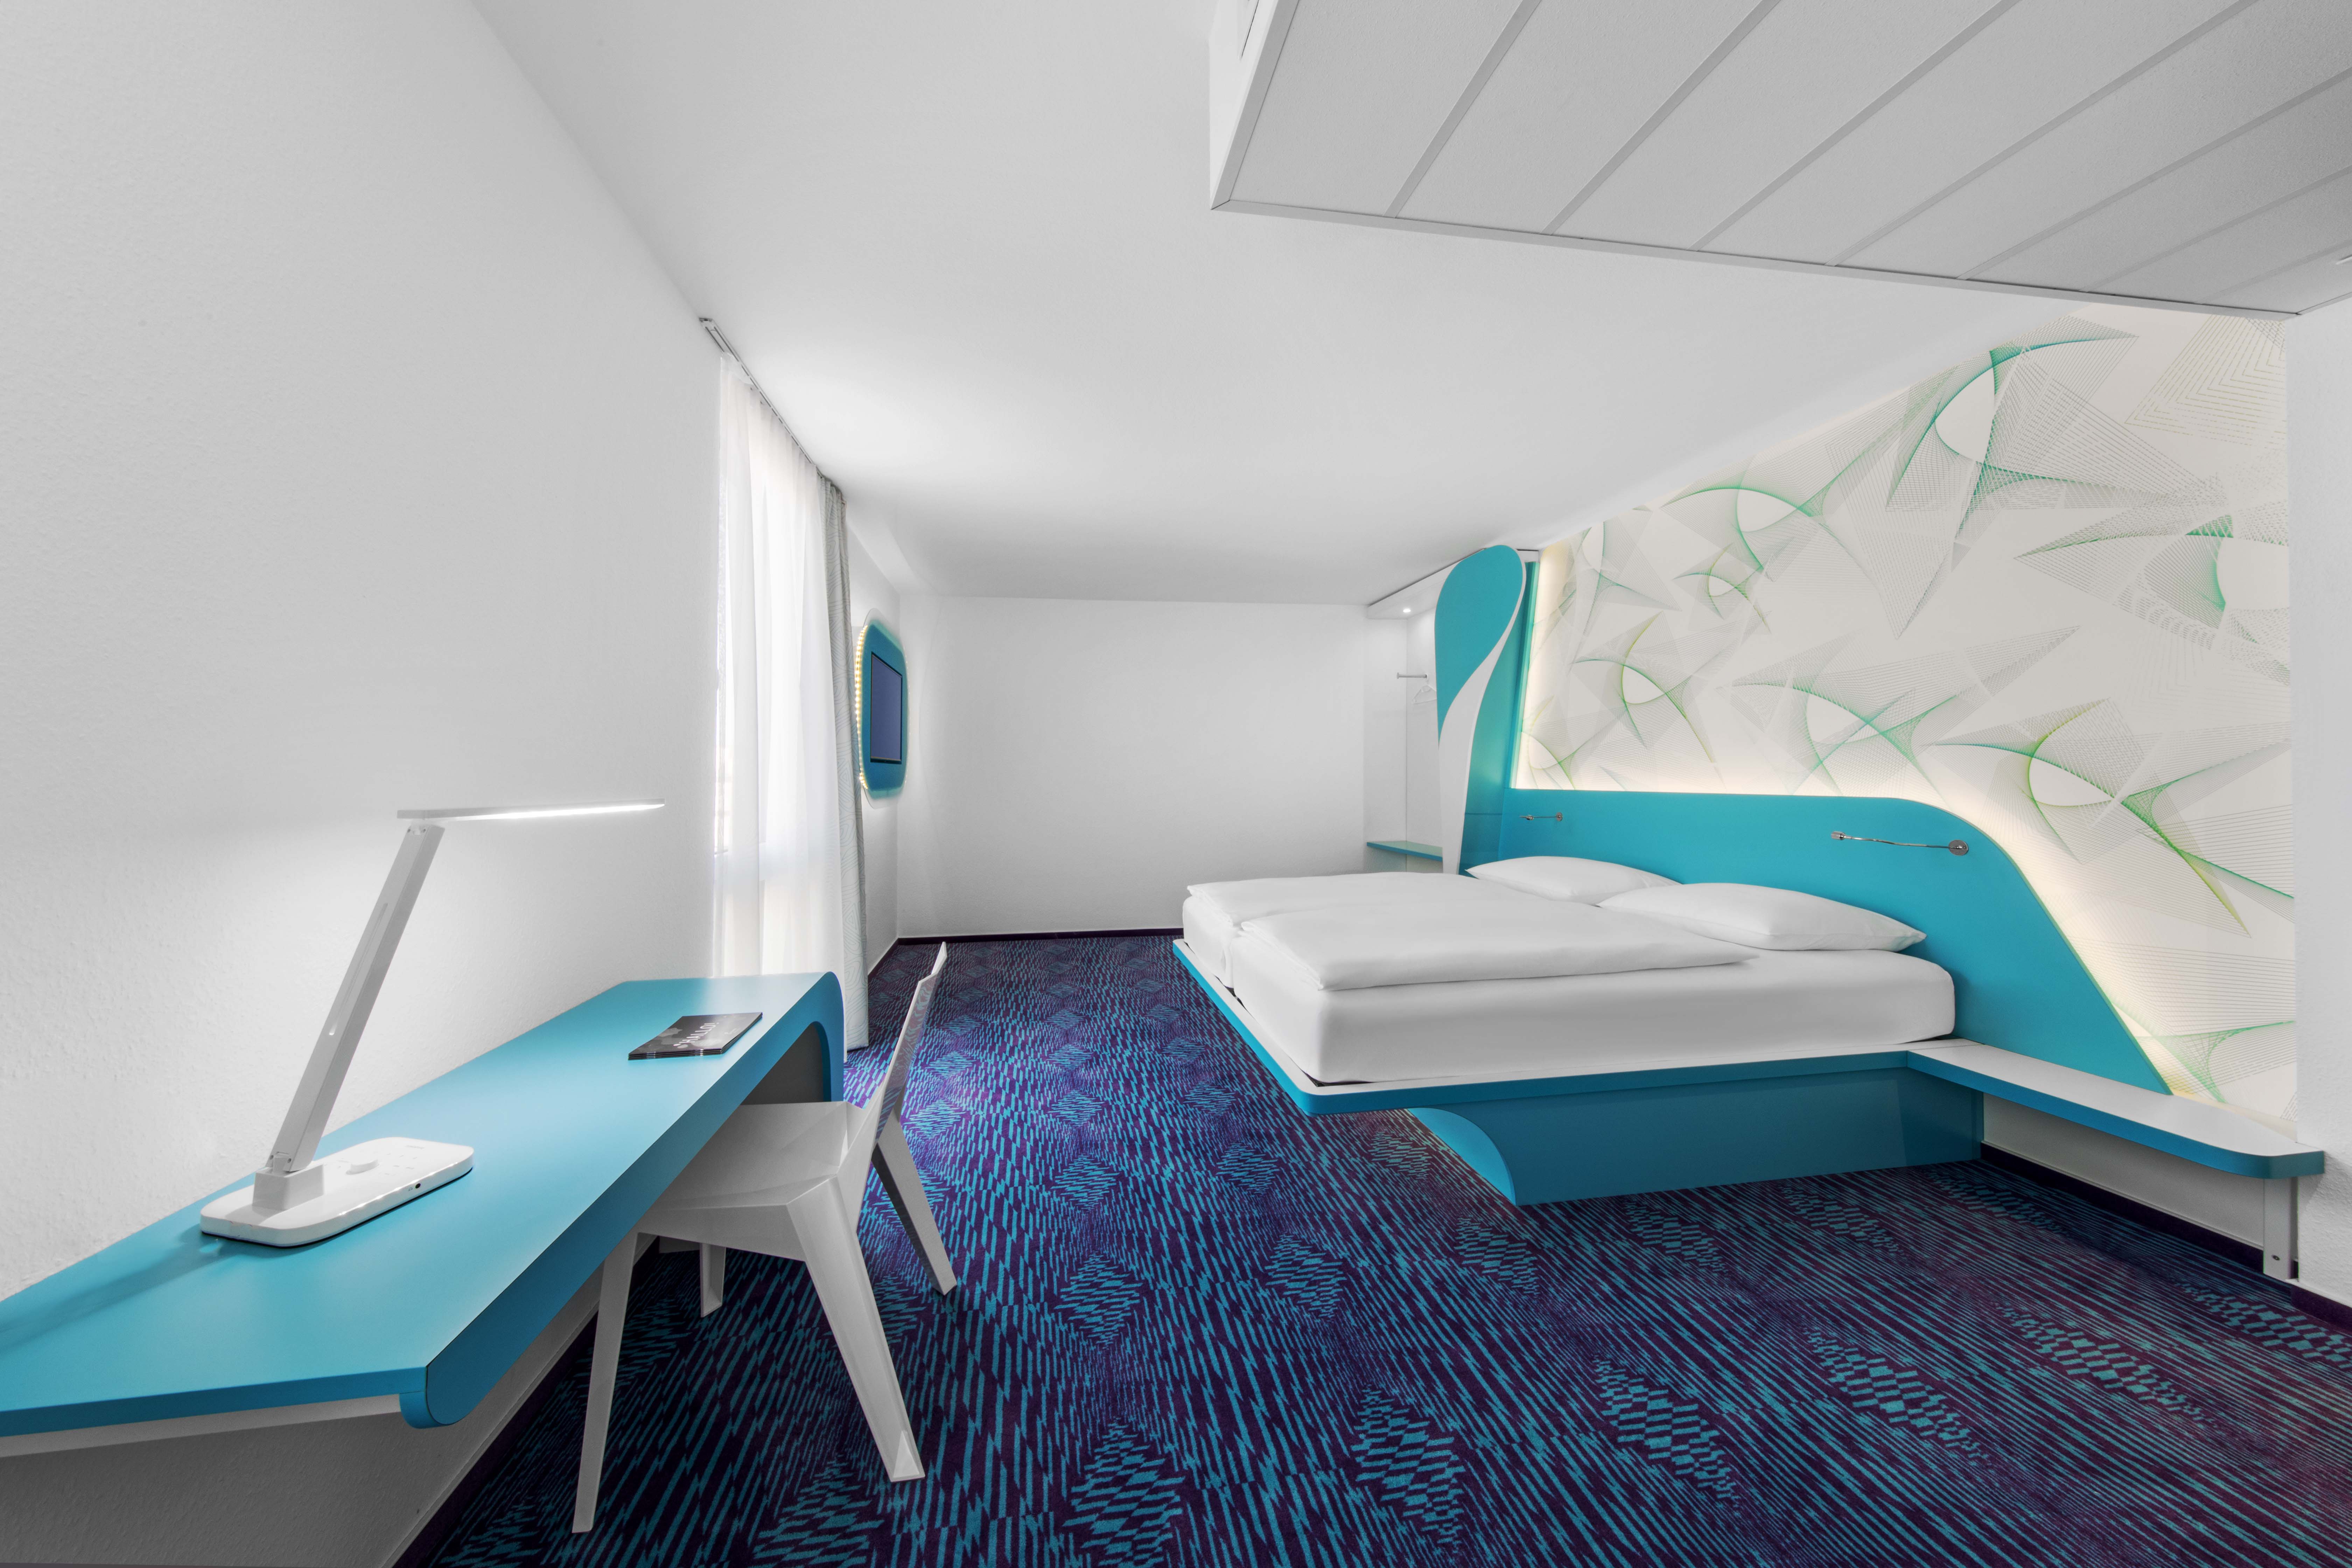 Großes Doppelzimmer des Designhotels in St. Pauli mit blauem Fußboden, kleiner Schreibtischecke und Fernseher